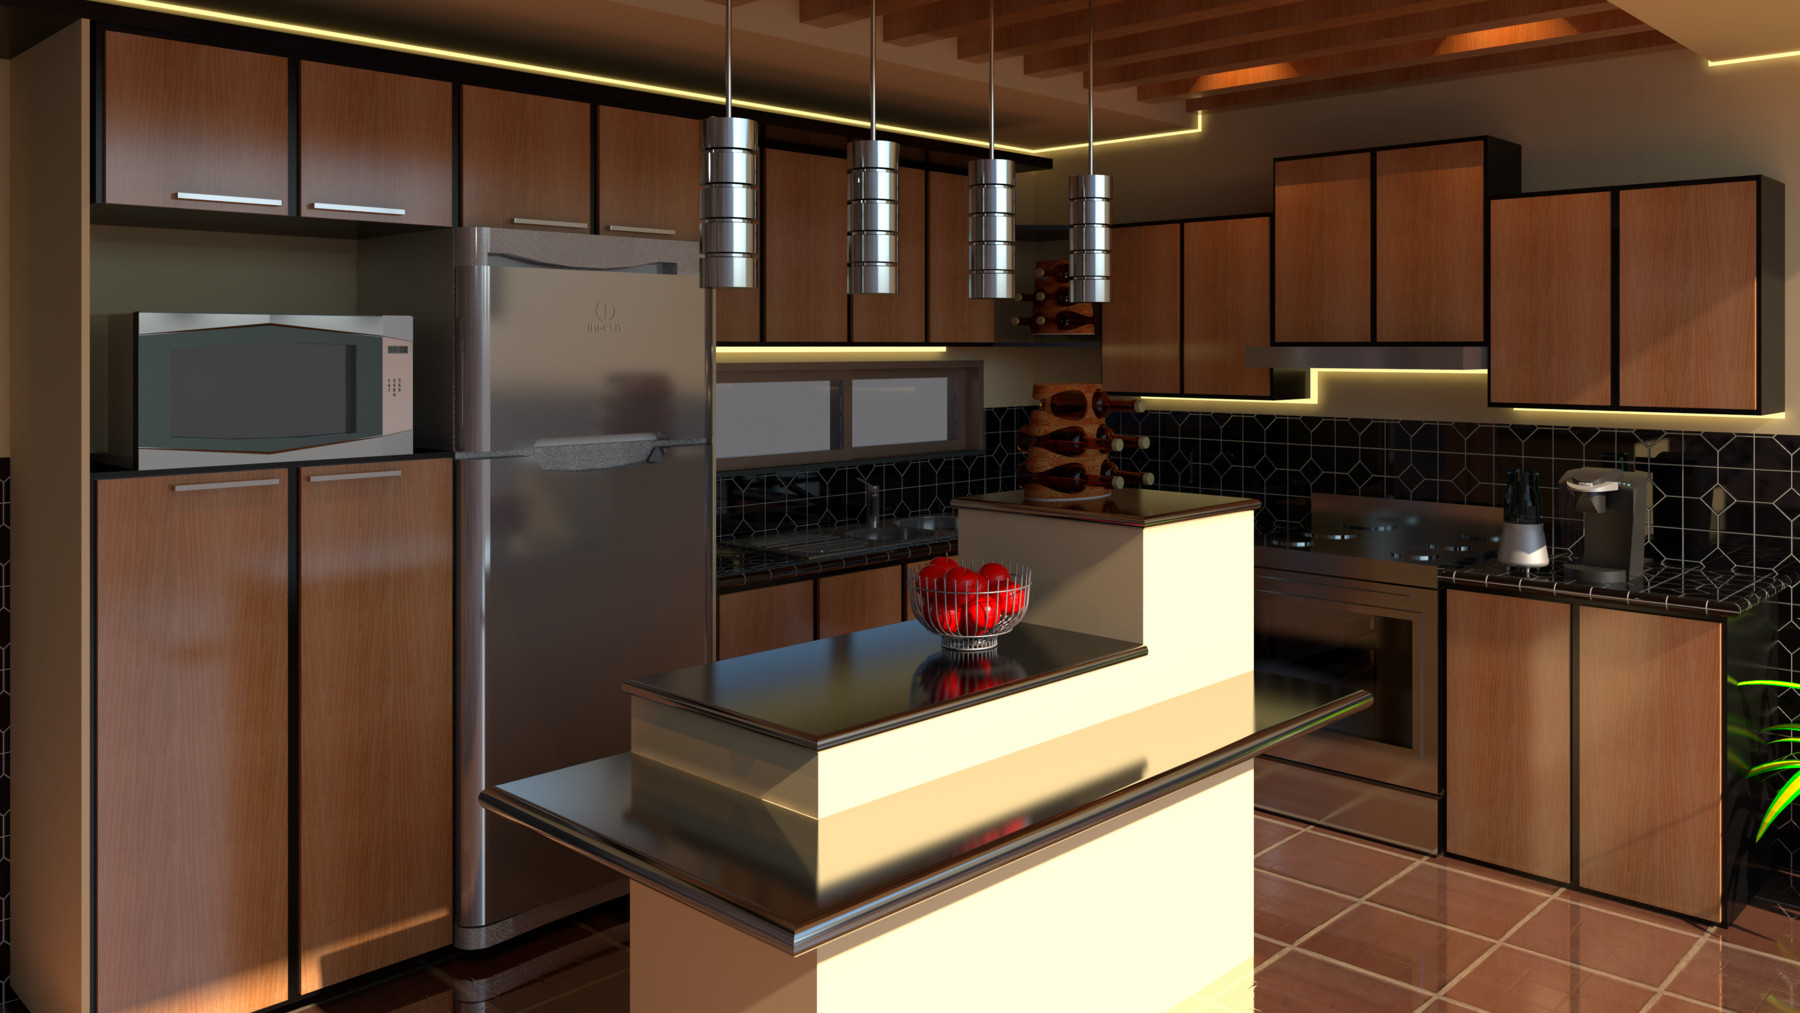 kitchen design in revit